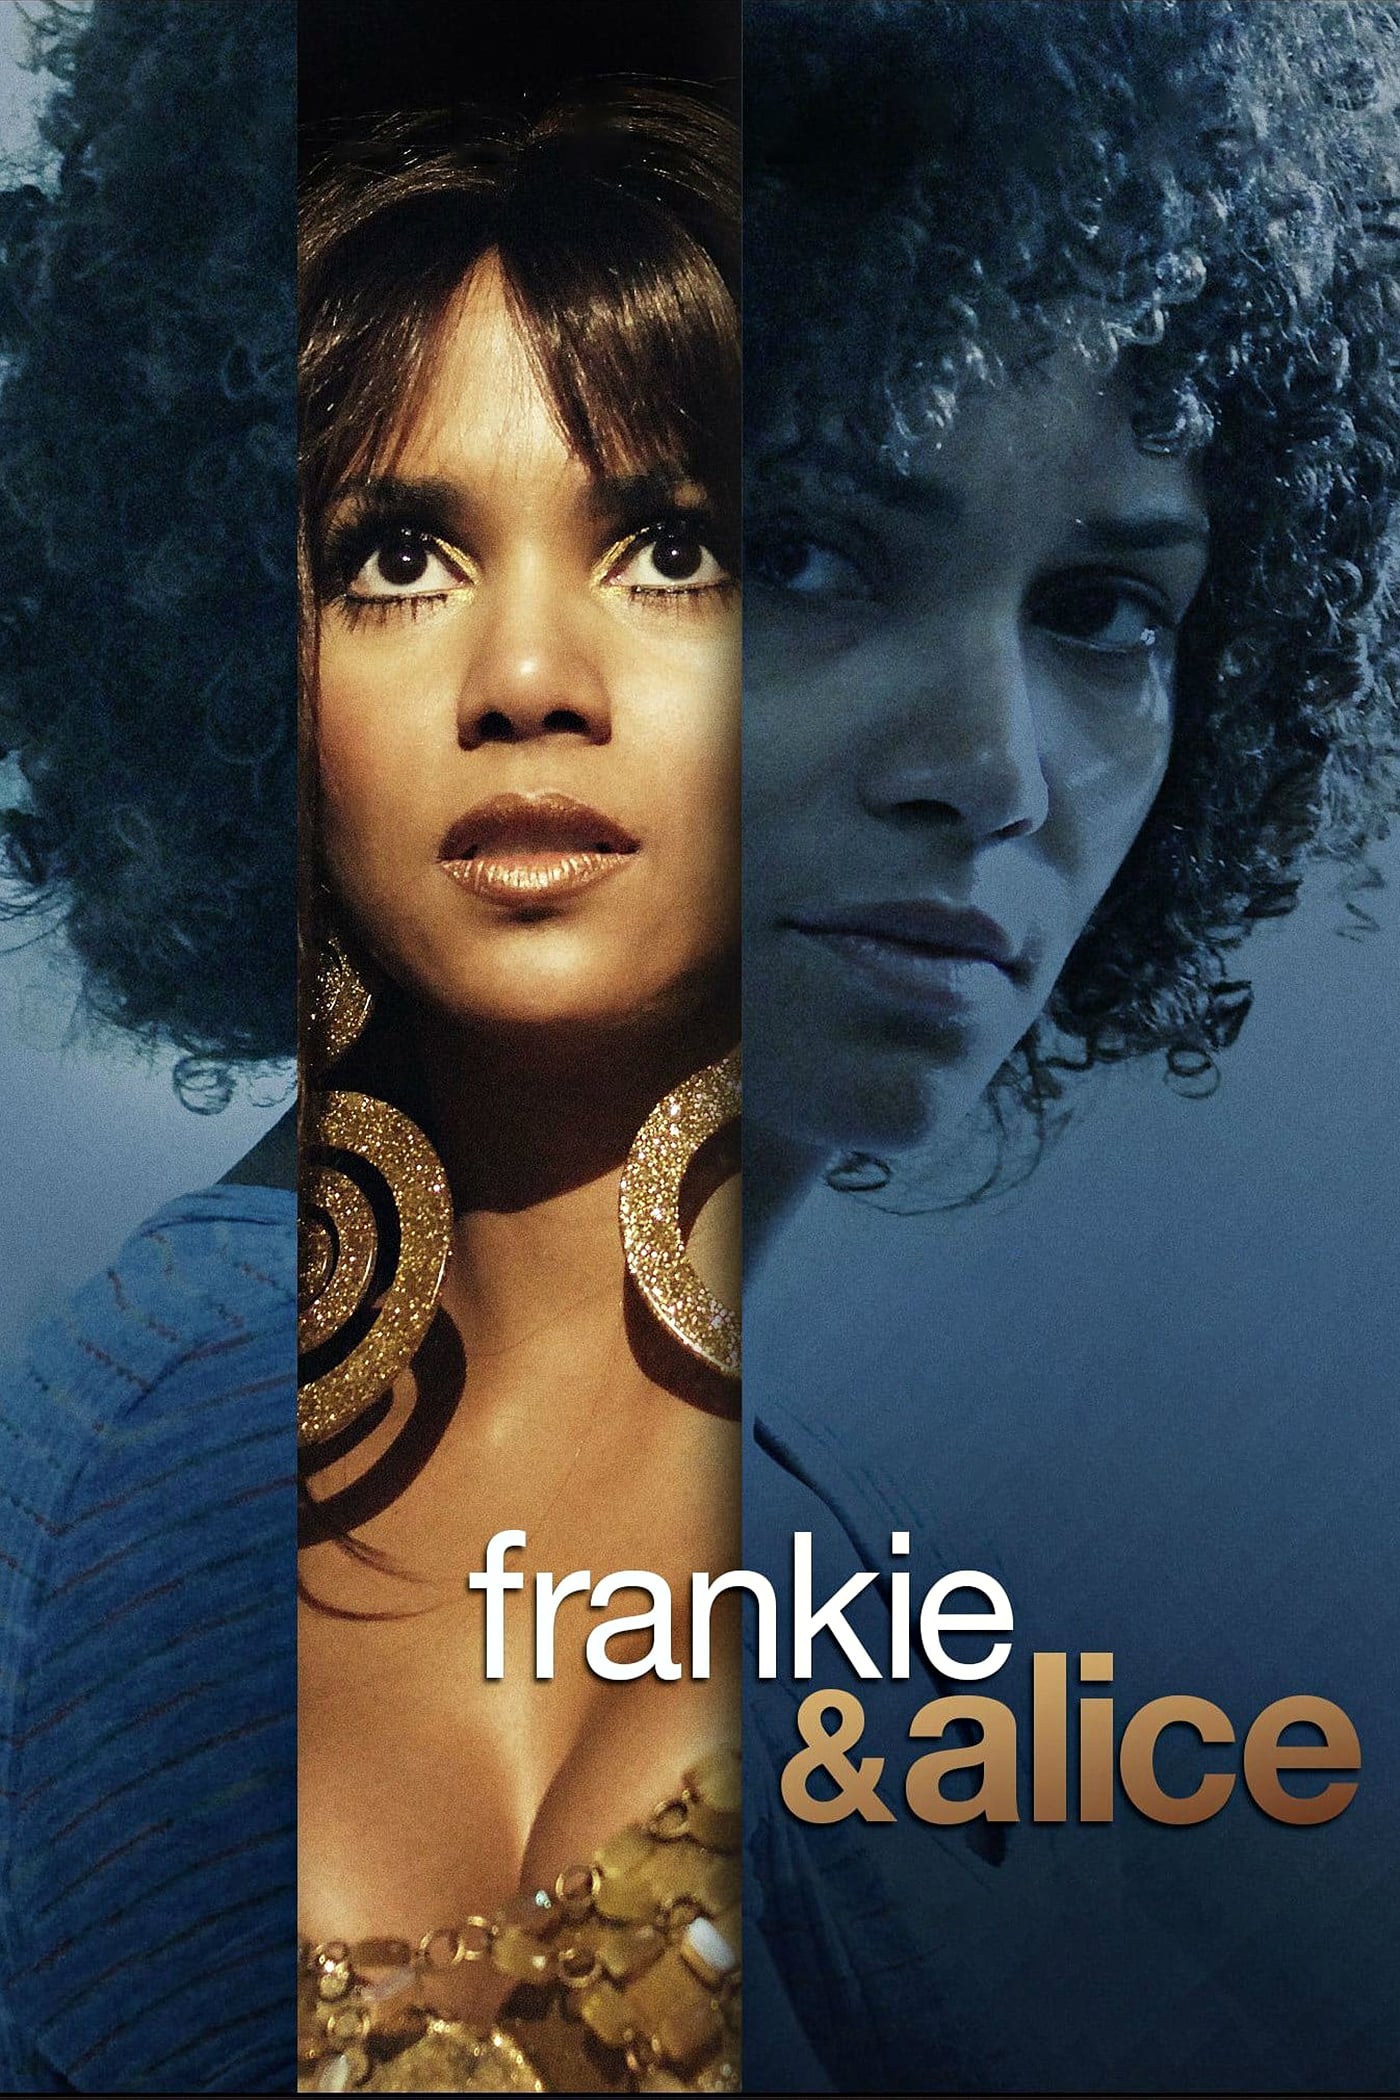 Plakat von "Frankie & Alice"